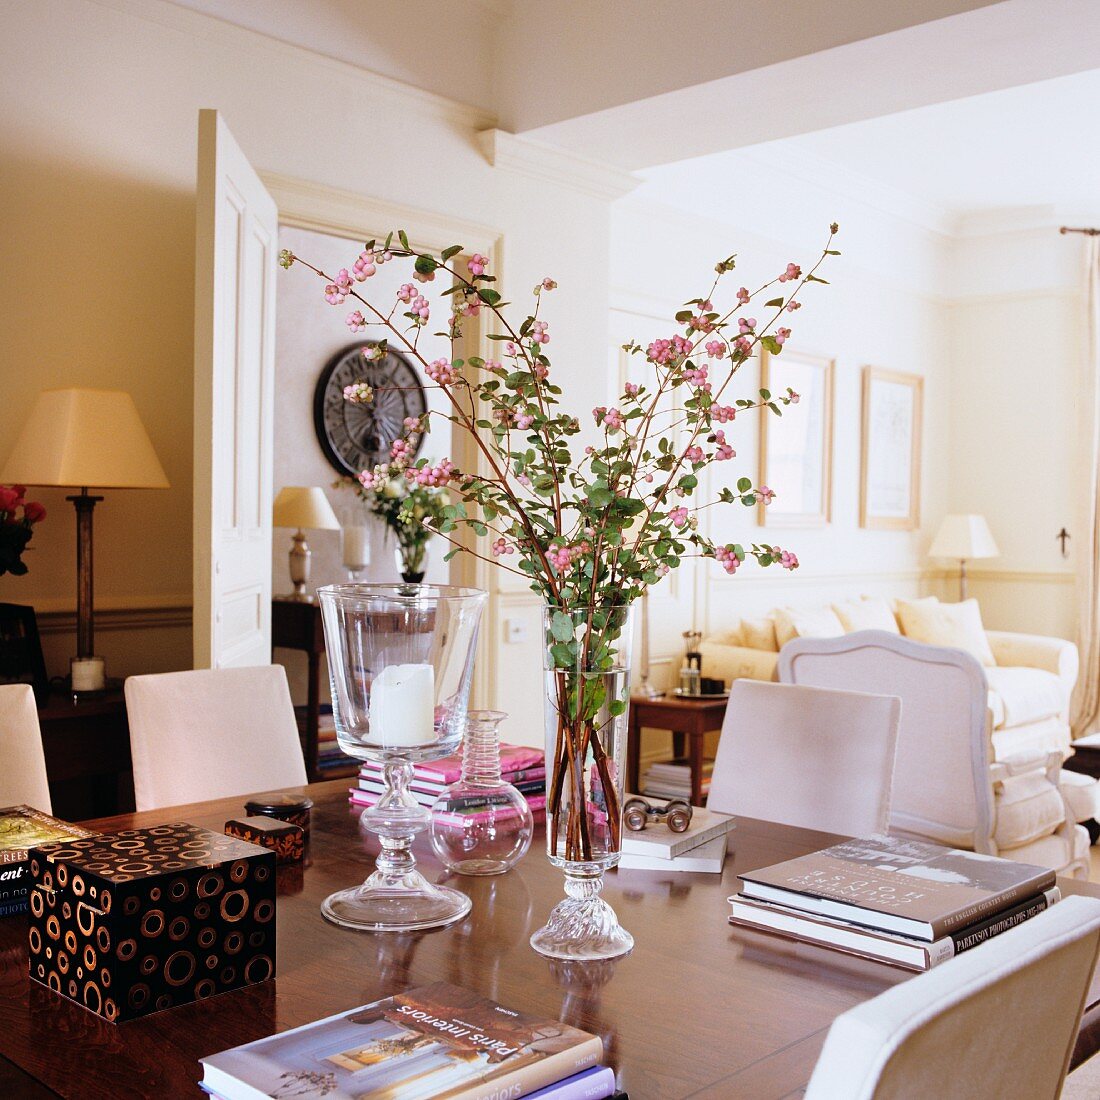 Zweig mit rosa Schneeberen in Vase zwischen Bücherstapeln auf Tisch in traditionellem Wohnzimmer